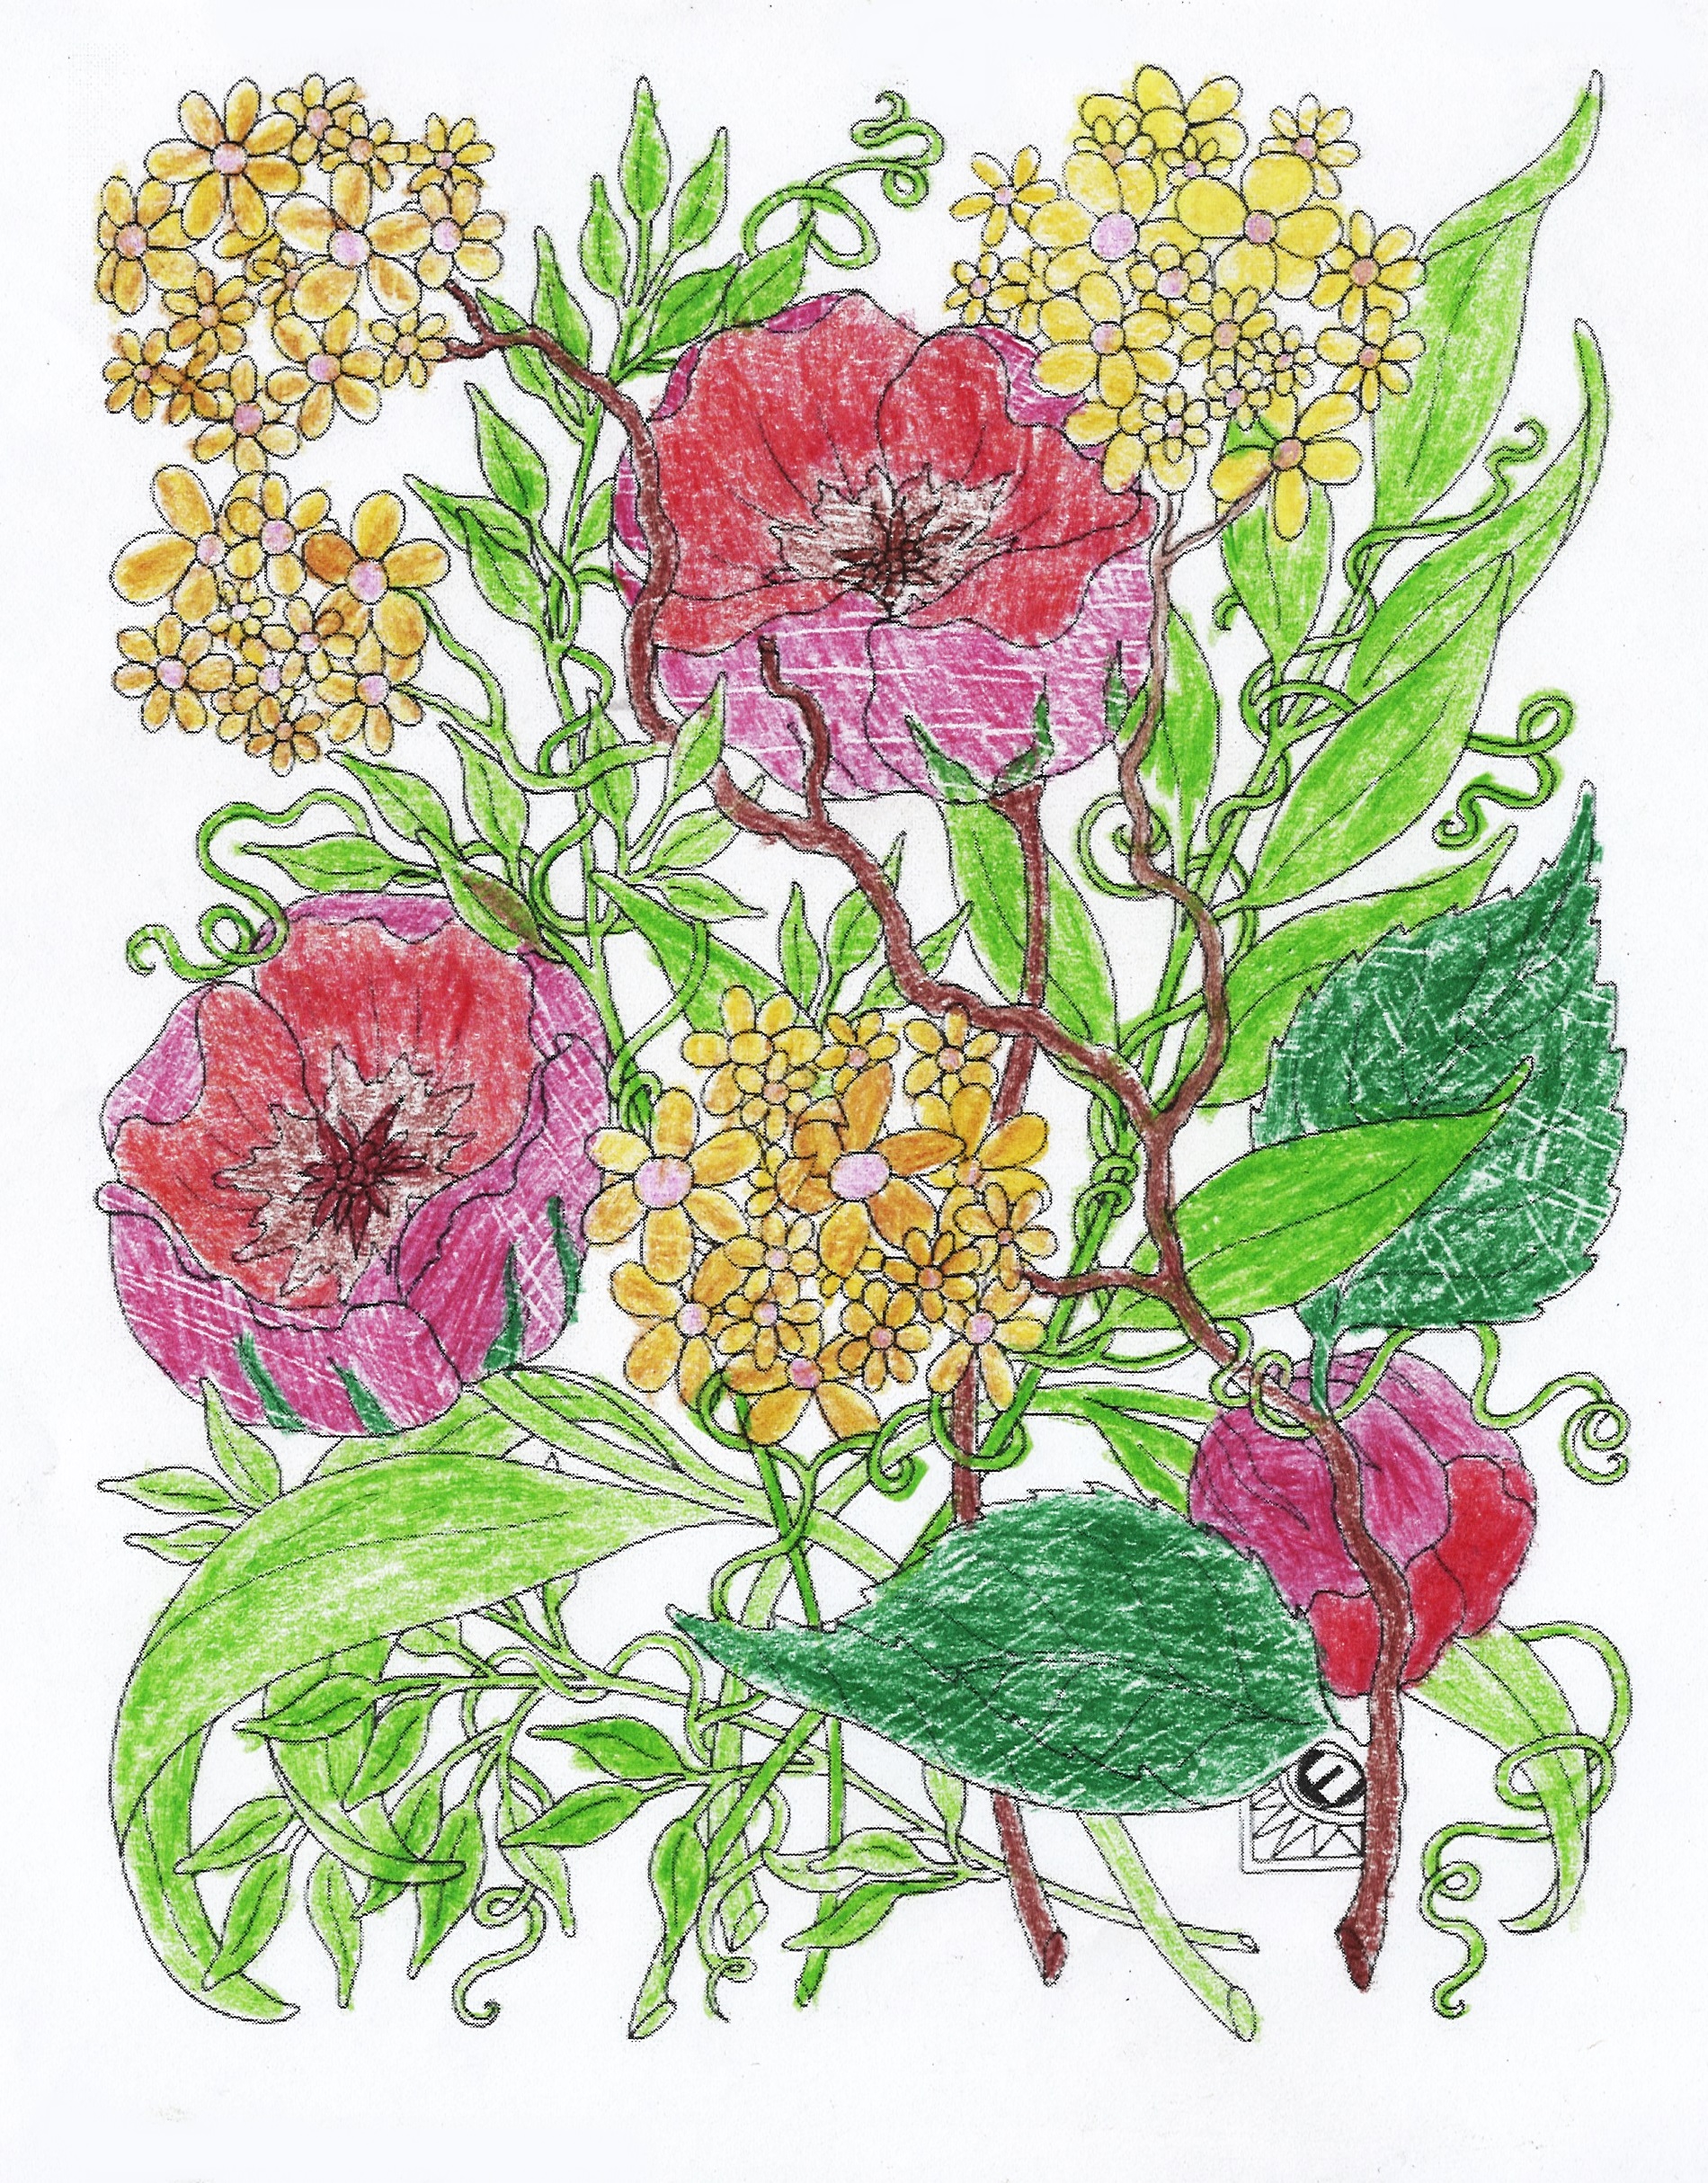 Praca plastyczna w formie kolorowanki przedstawiająca kolorowe kwiaty w otoczeniu zielonych liści. Kwiaty mają kolor żółty i różowy. Przypominają stokrotki i peonie.